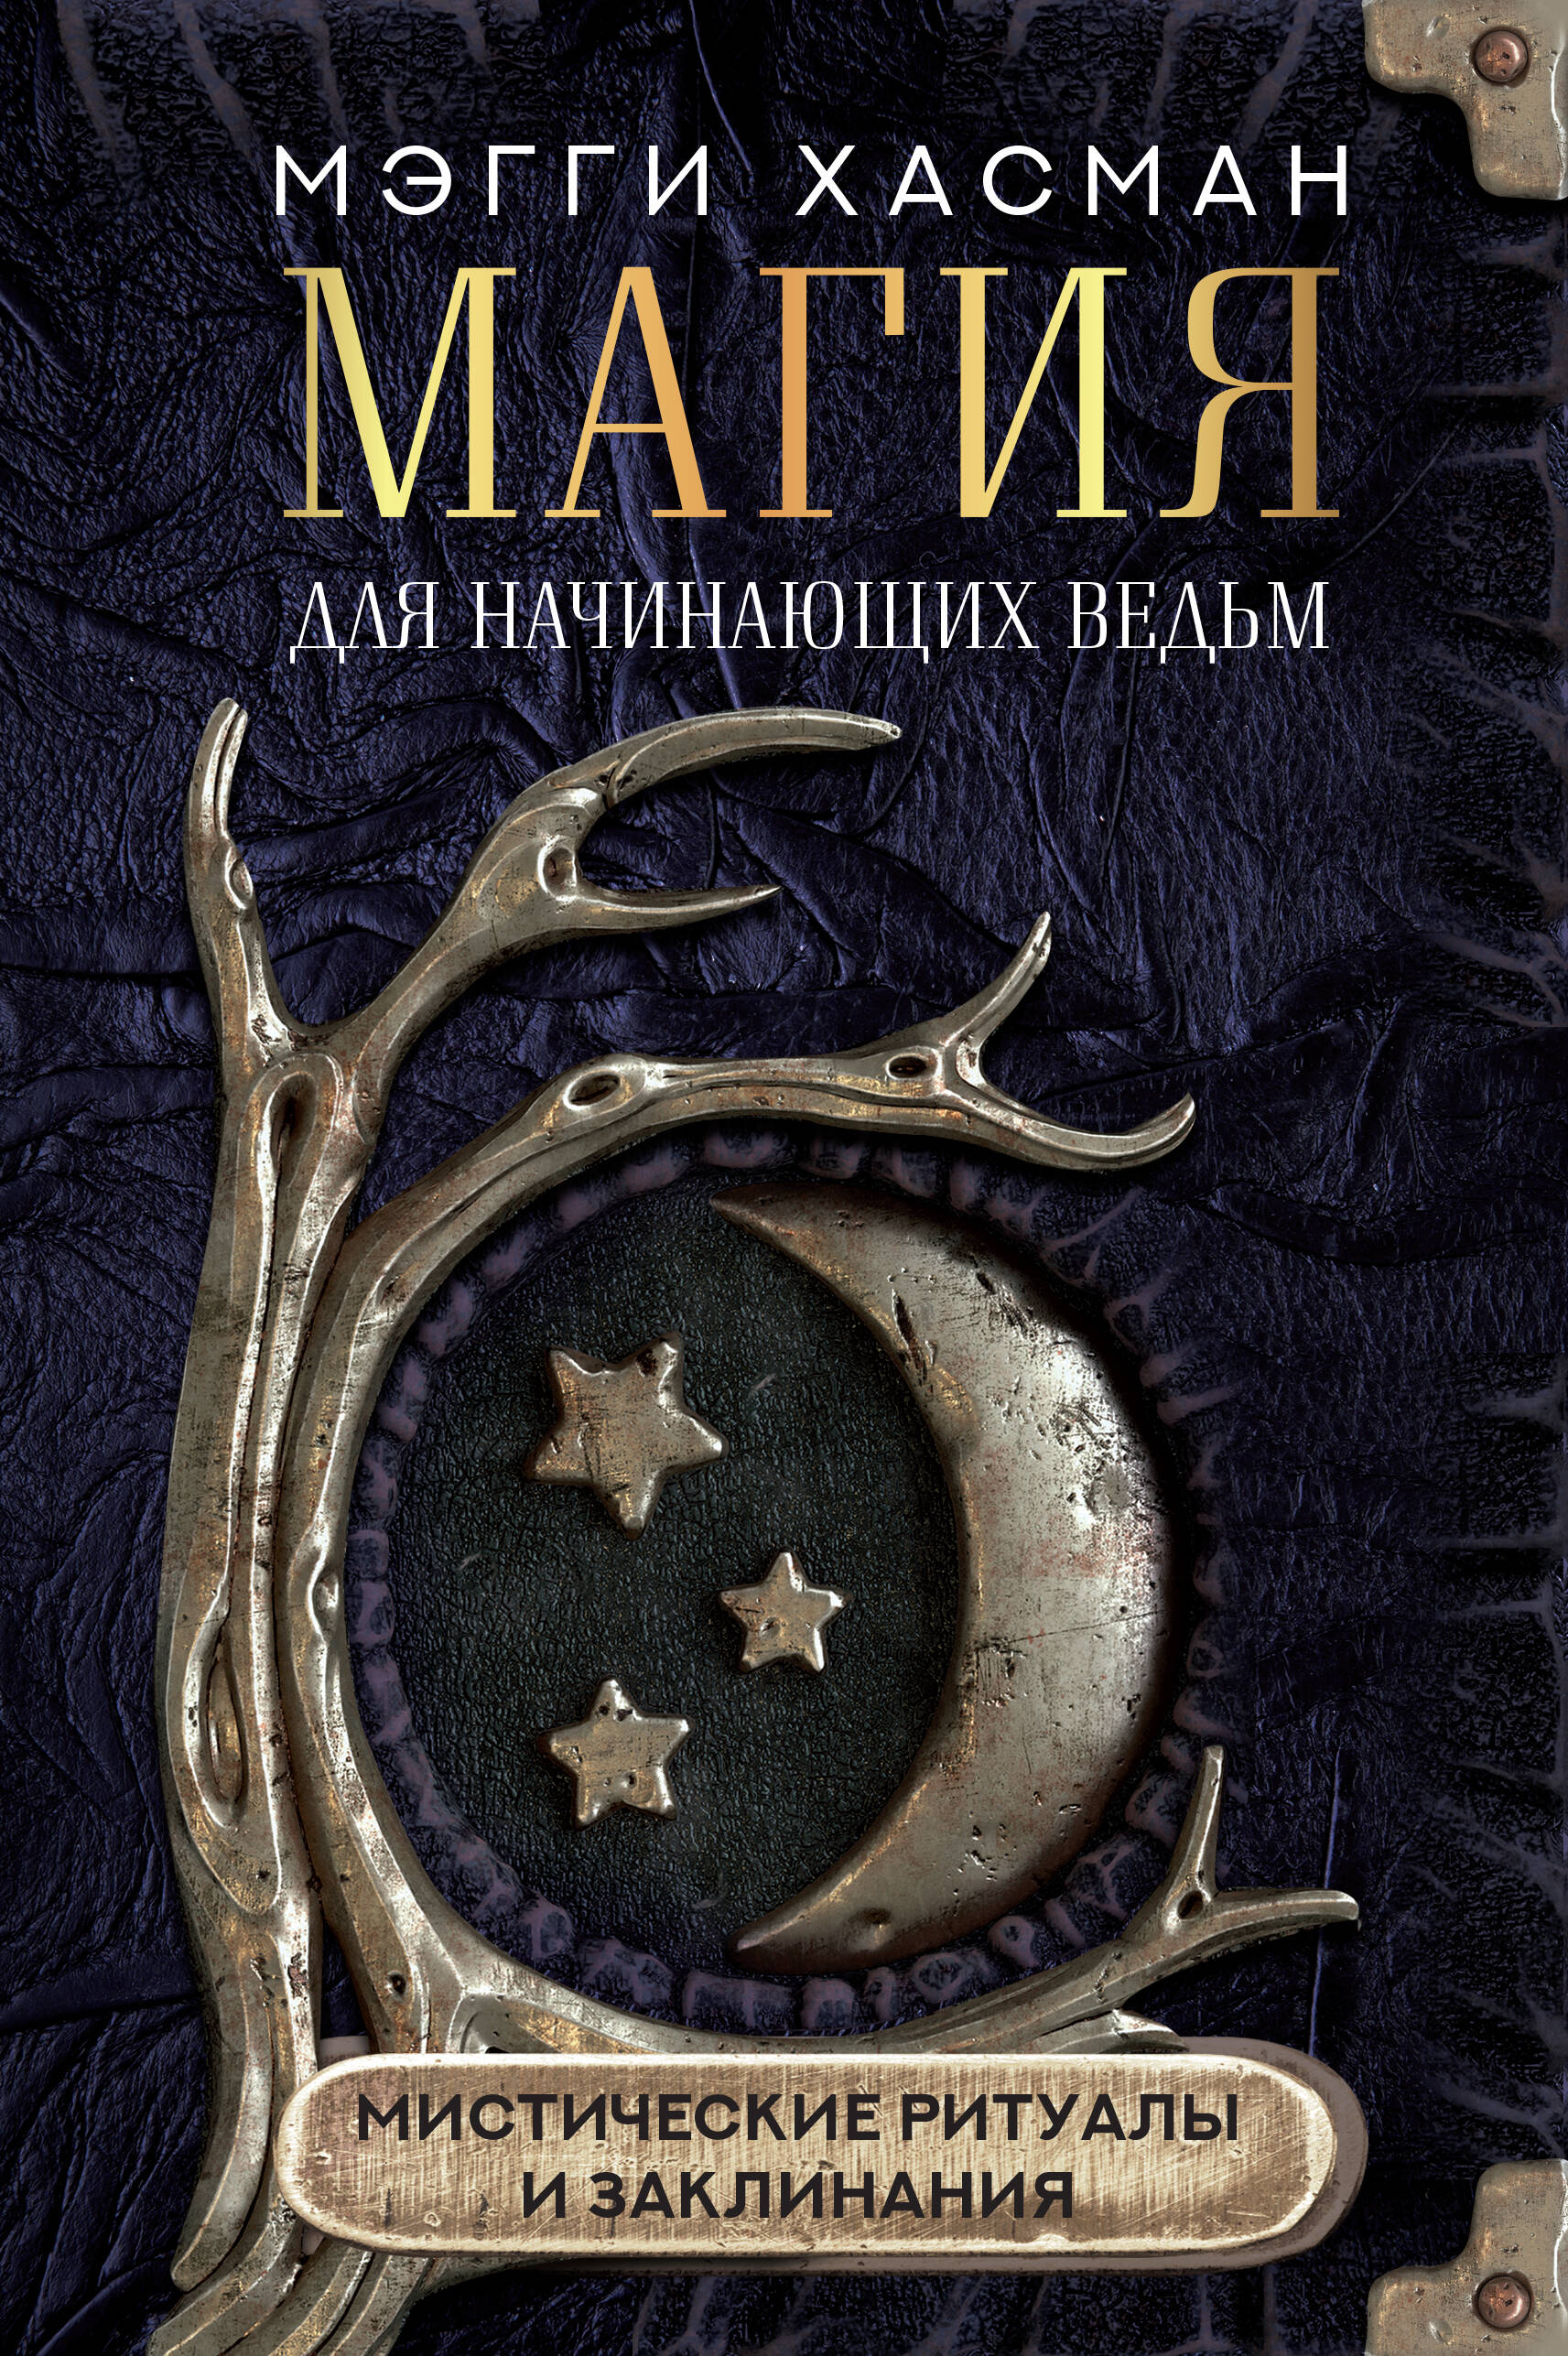 Хасман Мэгги Магия для начинающих ведьм: мистические ритуалы и заклинания ессеева елена магия луны ритуалы заклинания гороскоп